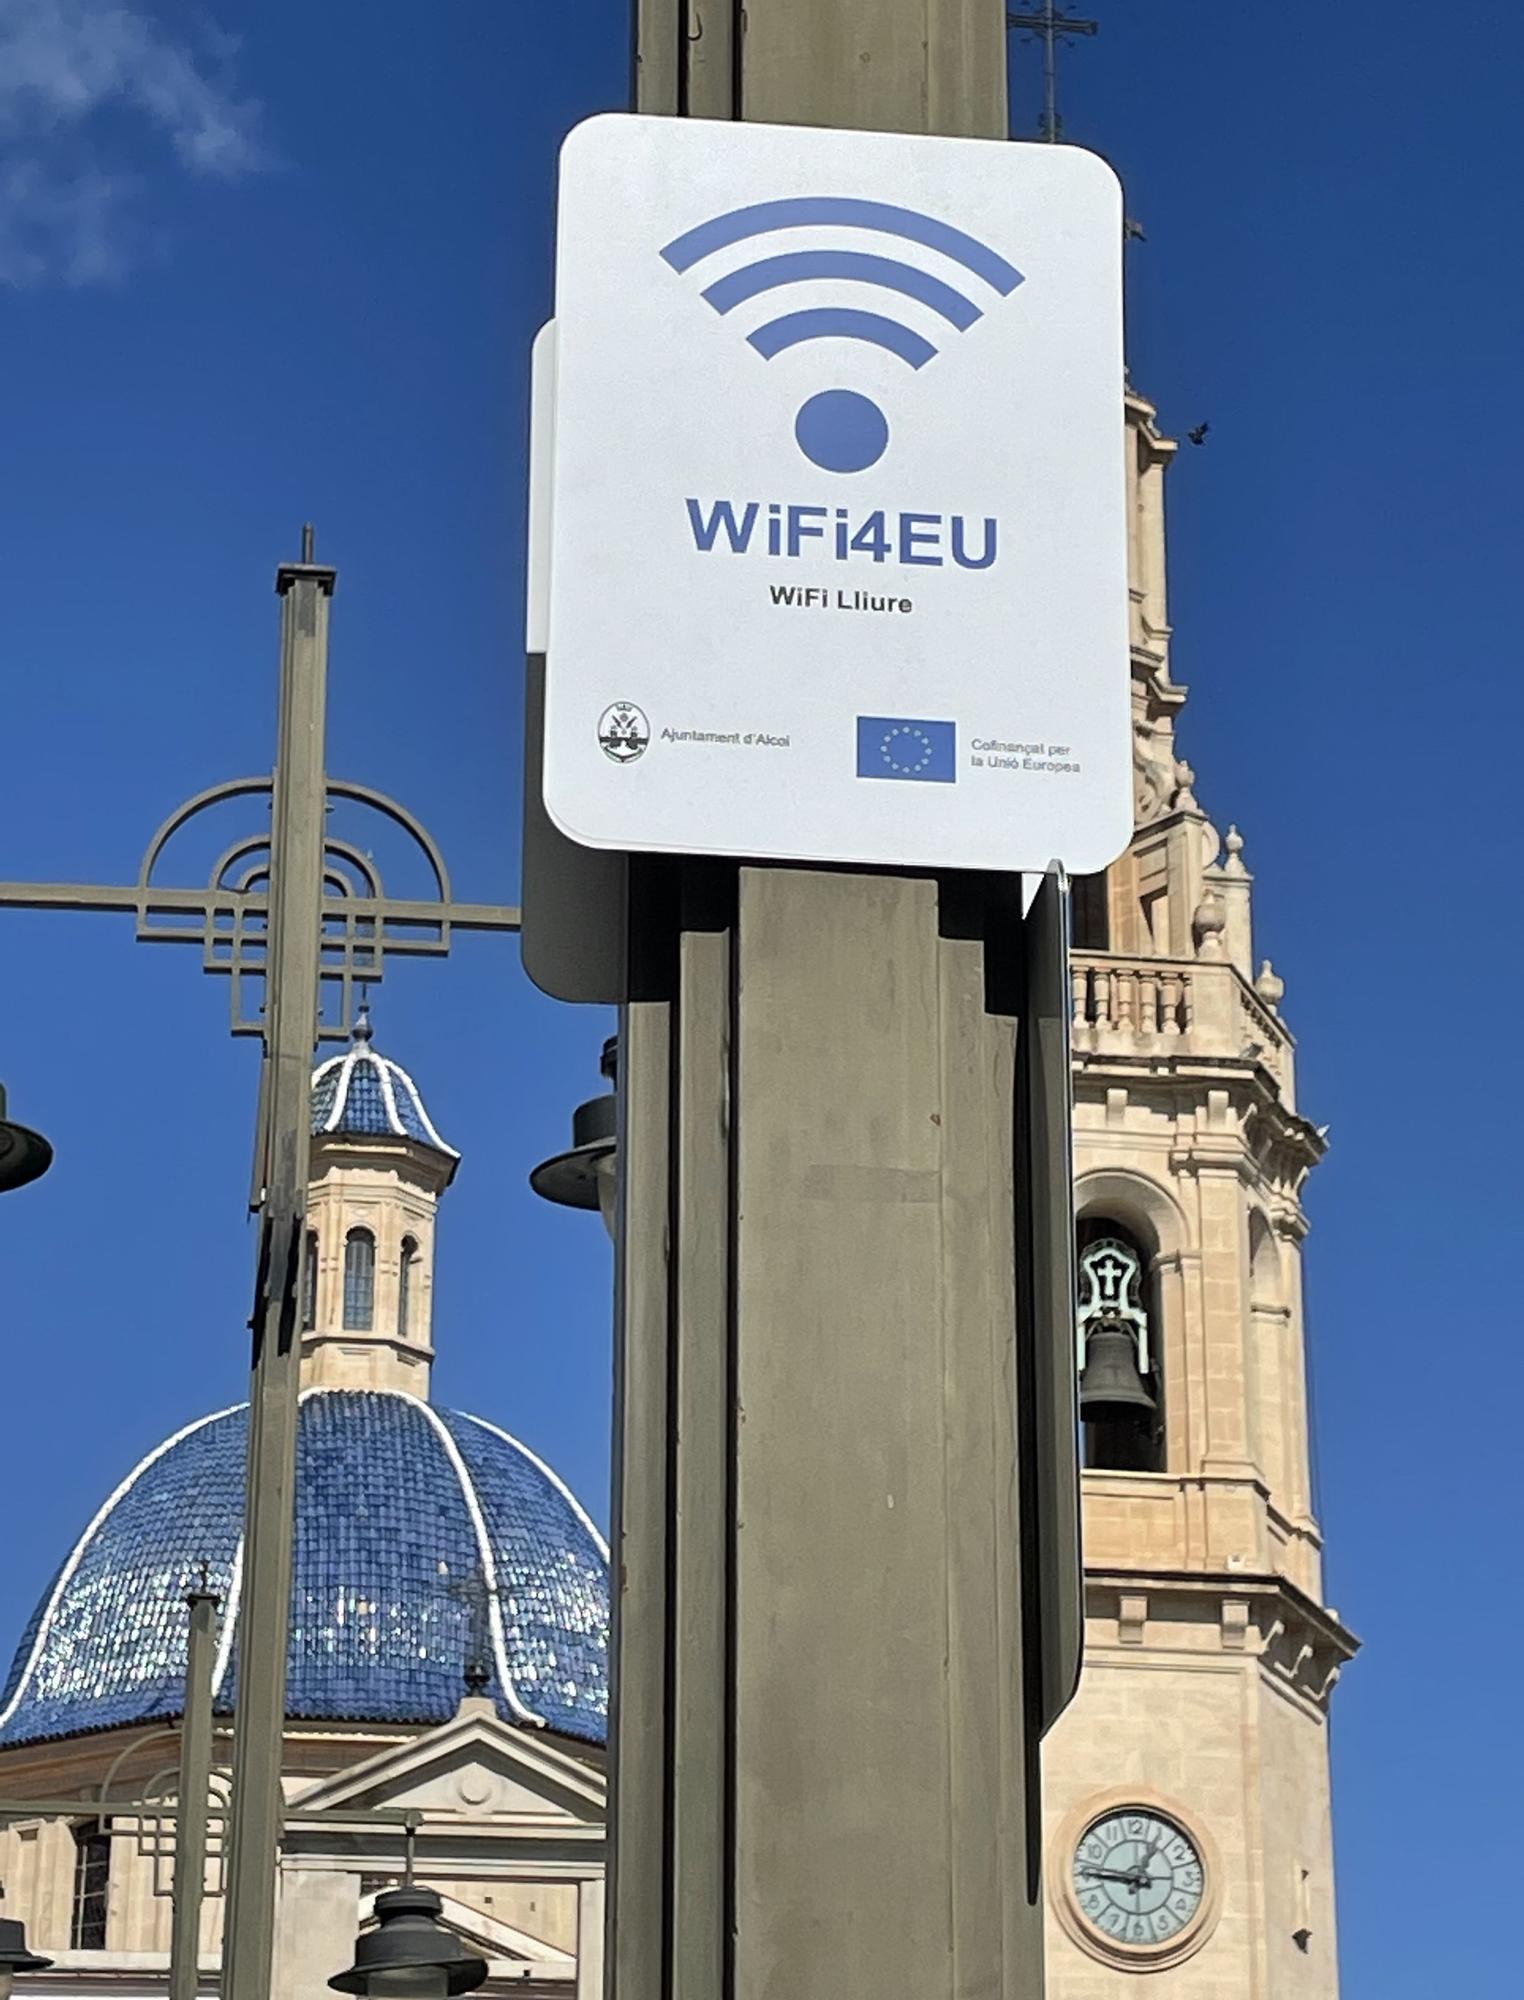 La WiFi está configurada para reconocer automáticamente un mismo acceso gratuito durante al menos 12 horas